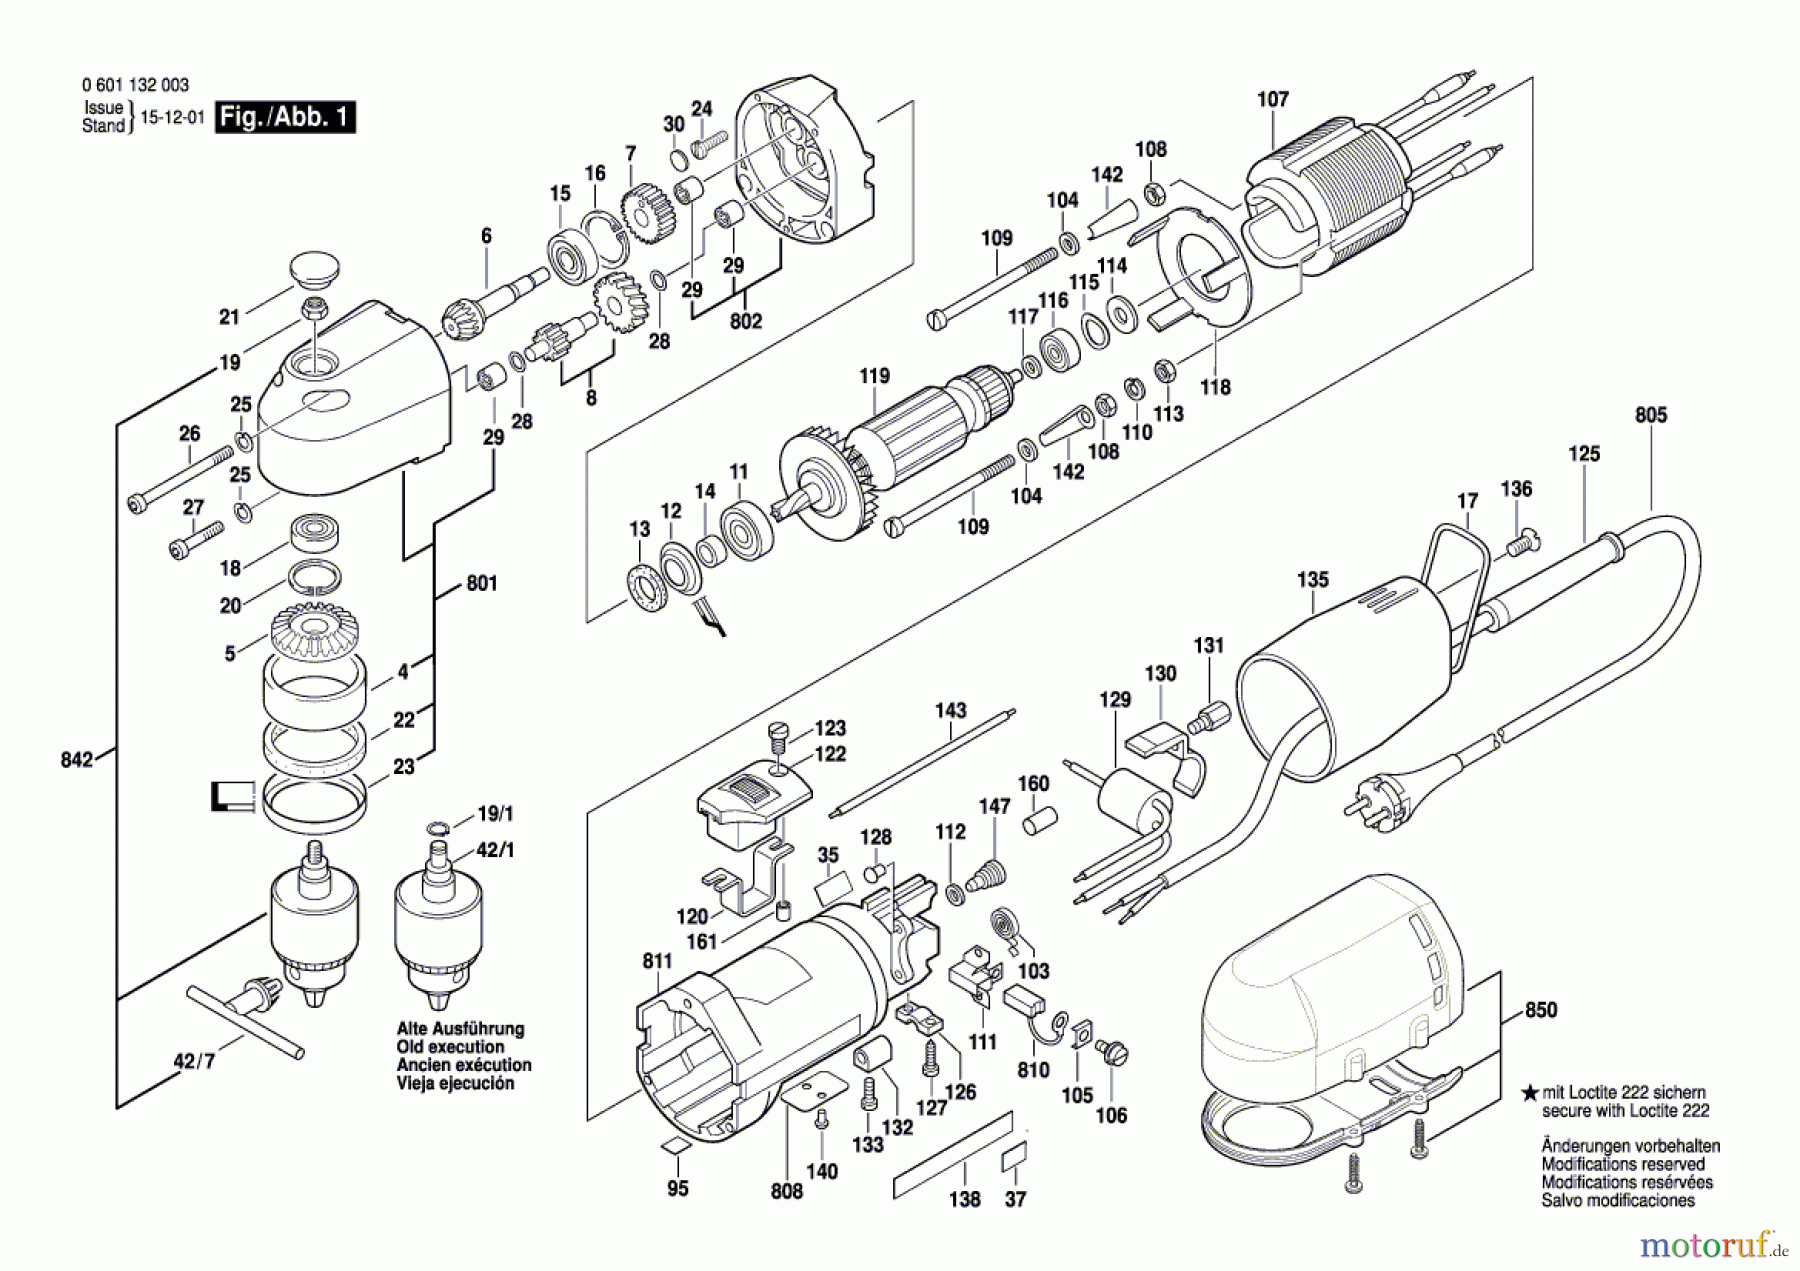  Bosch Werkzeug Winkelbohrmaschine GWB 10 Seite 1